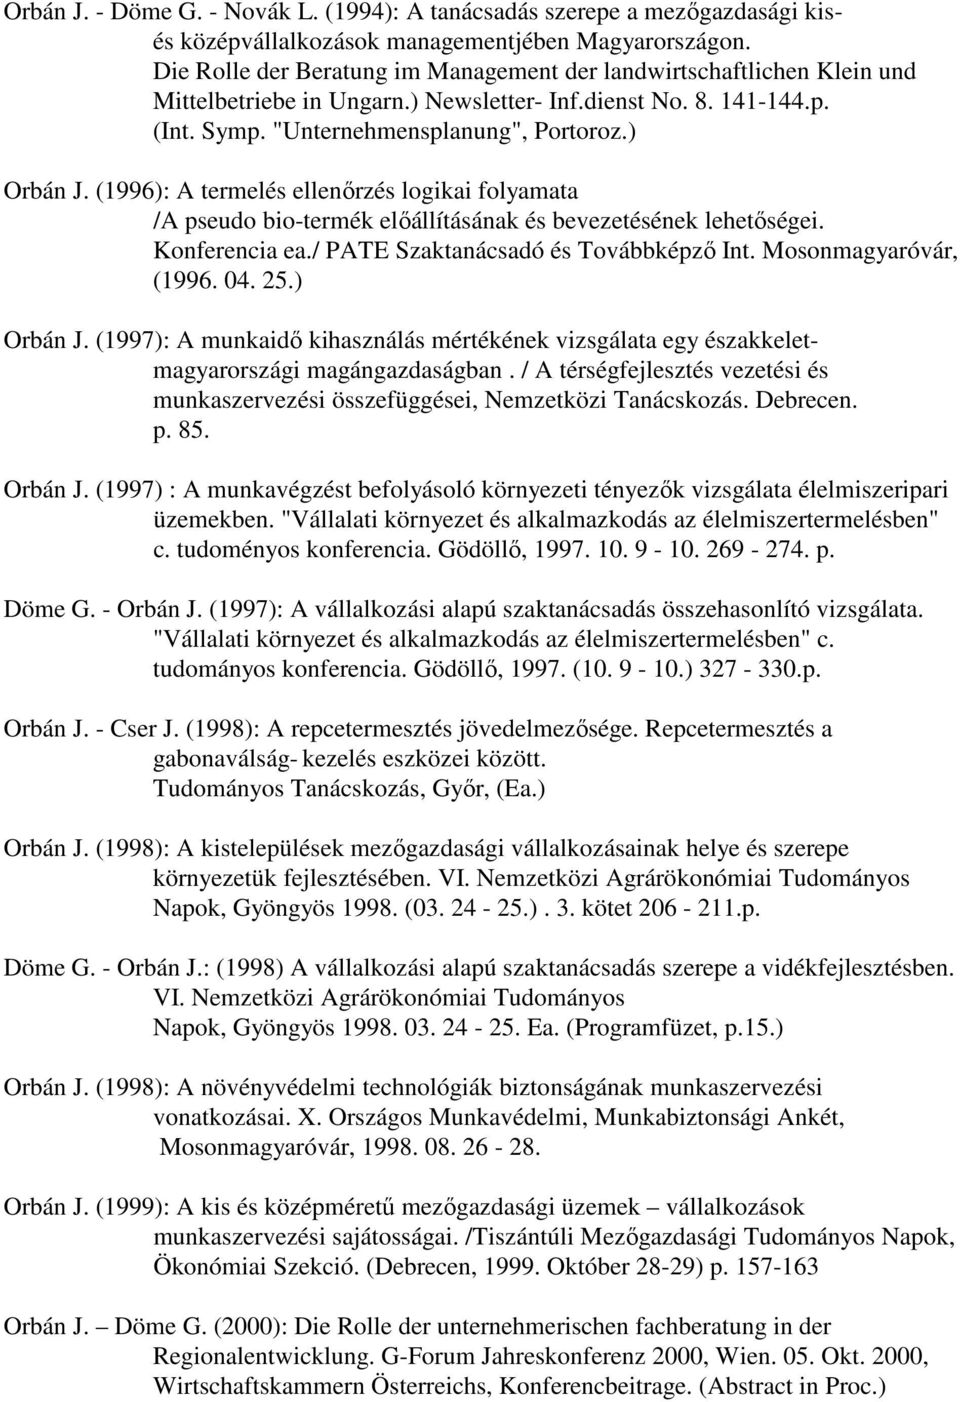 (1996): A termelés ellenırzés logikai folyamata /A pseudo bio-termék elıállításának és bevezetésének lehetıségei. Konferencia ea./ PATE Szaktanácsadó és Továbbképzı Int. Mosonmagyaróvár, (1996. 04.